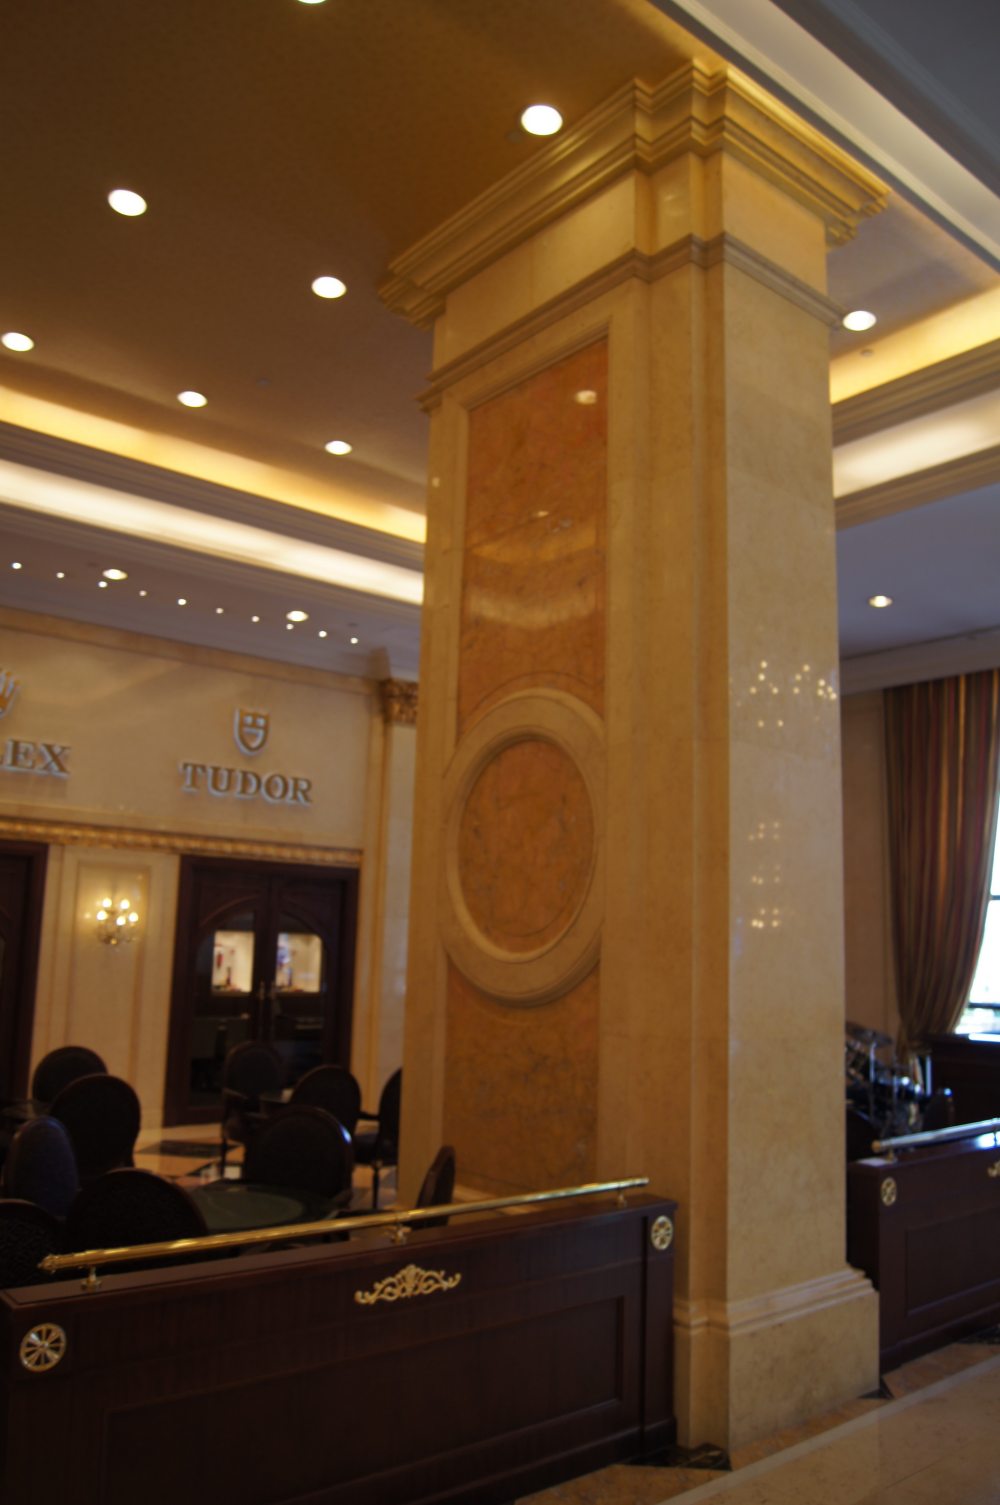 澳门英皇娱乐酒店Grand Emperor Hotel， Macau_DSC03813_调整大小.JPG